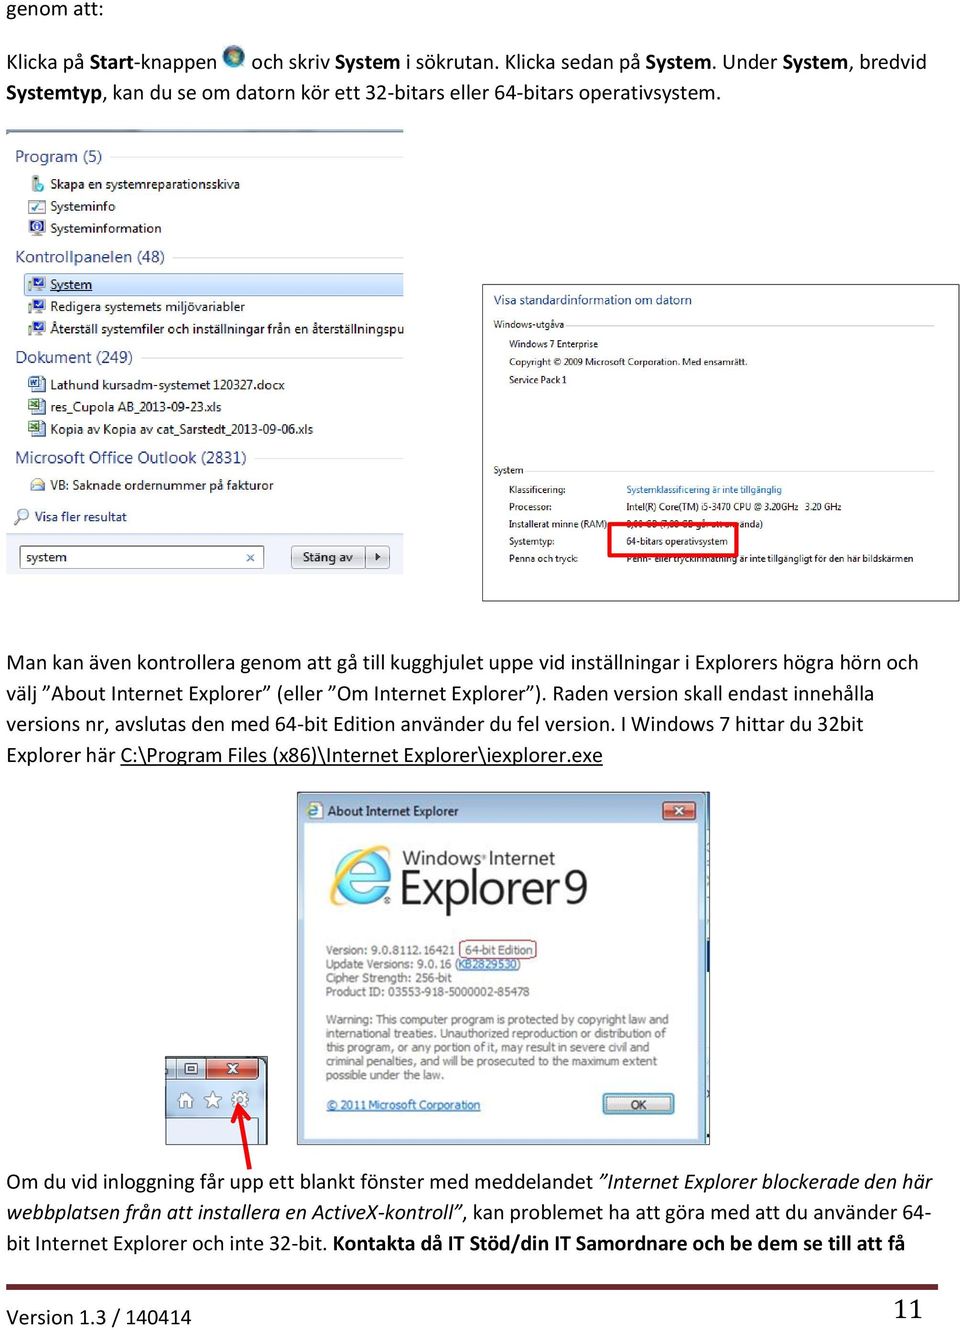 Raden version skall endast innehålla versions nr, avslutas den med 64-bit Edition använder du fel version. I Windows 7 hittar du 32bit Explorer här C:\Program Files (x86)\internet Explorer\iexplorer.